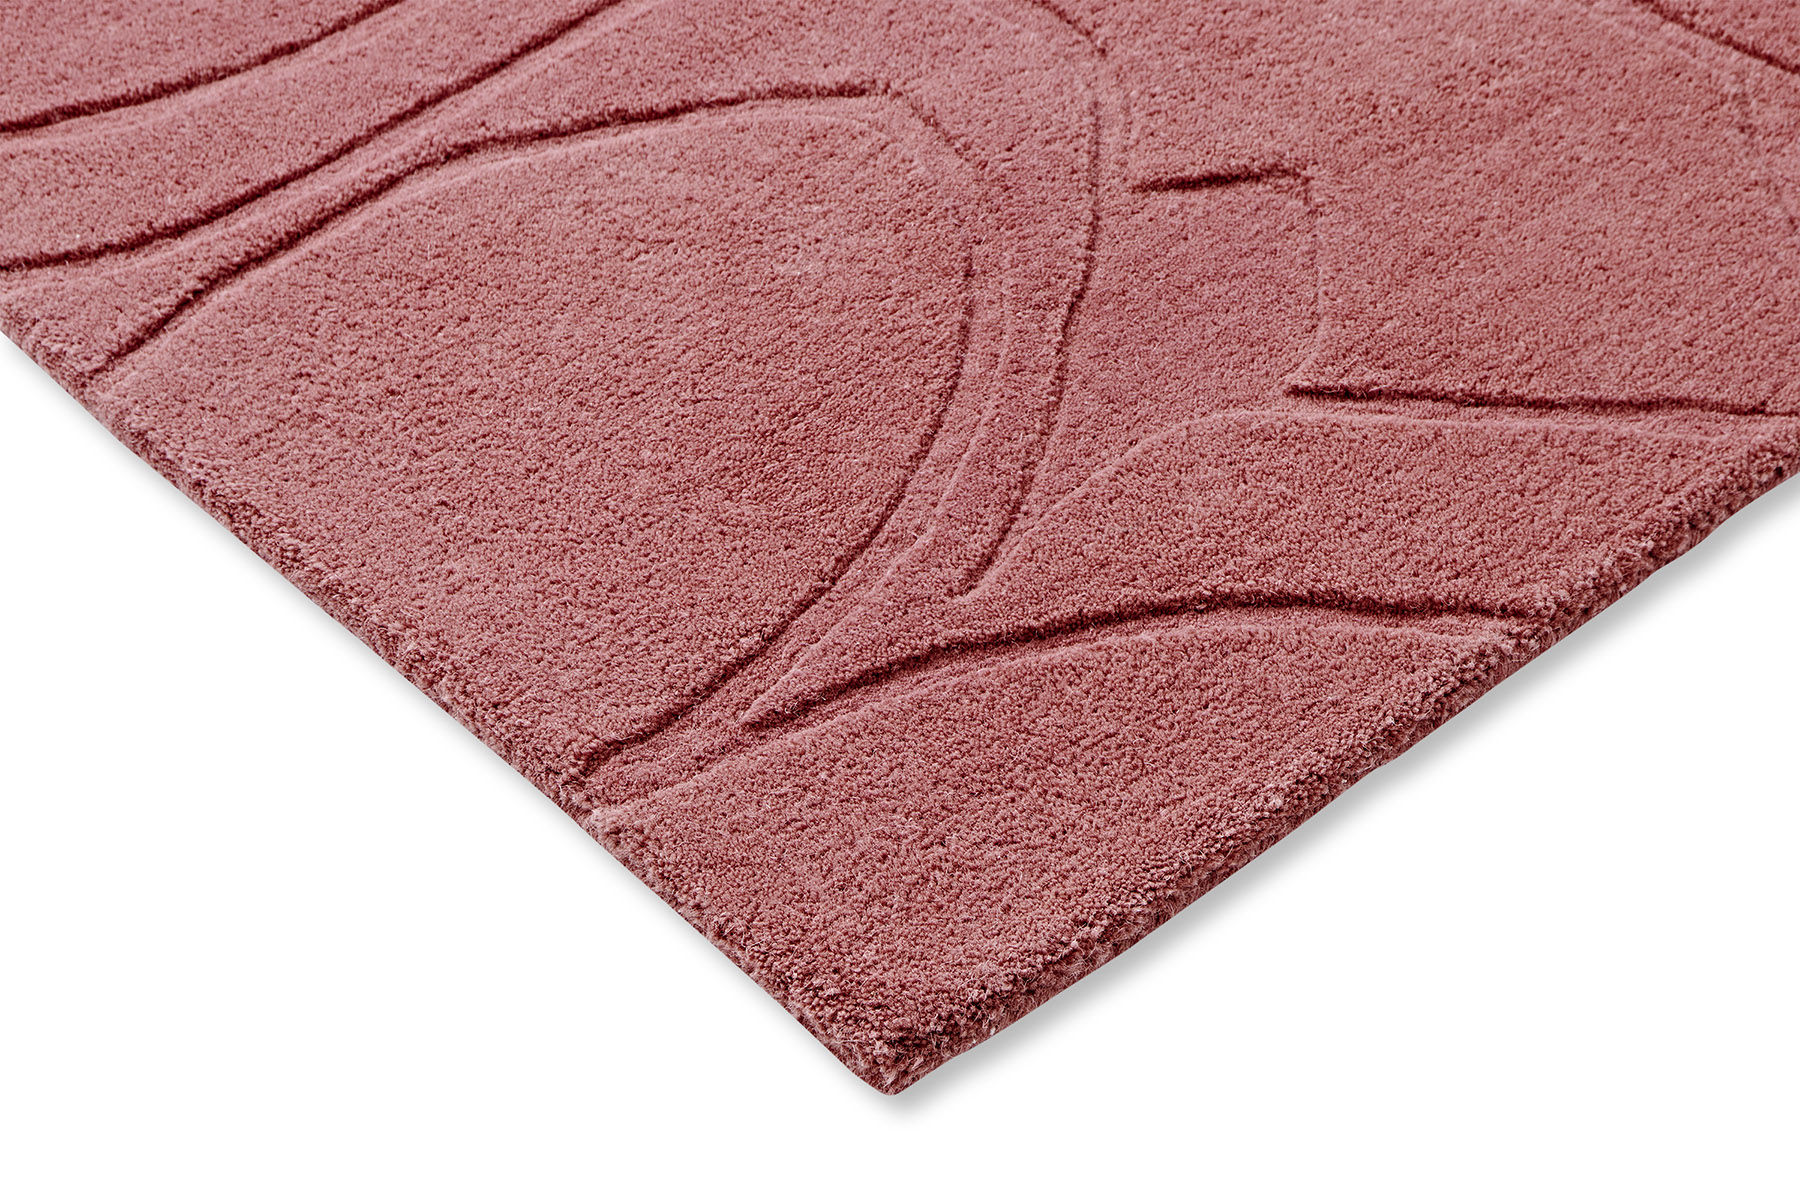 Romantic Magnolia Pink Designer Rug ☞ Size: 6' 7" x 9' 2" (200 x 280 cm)